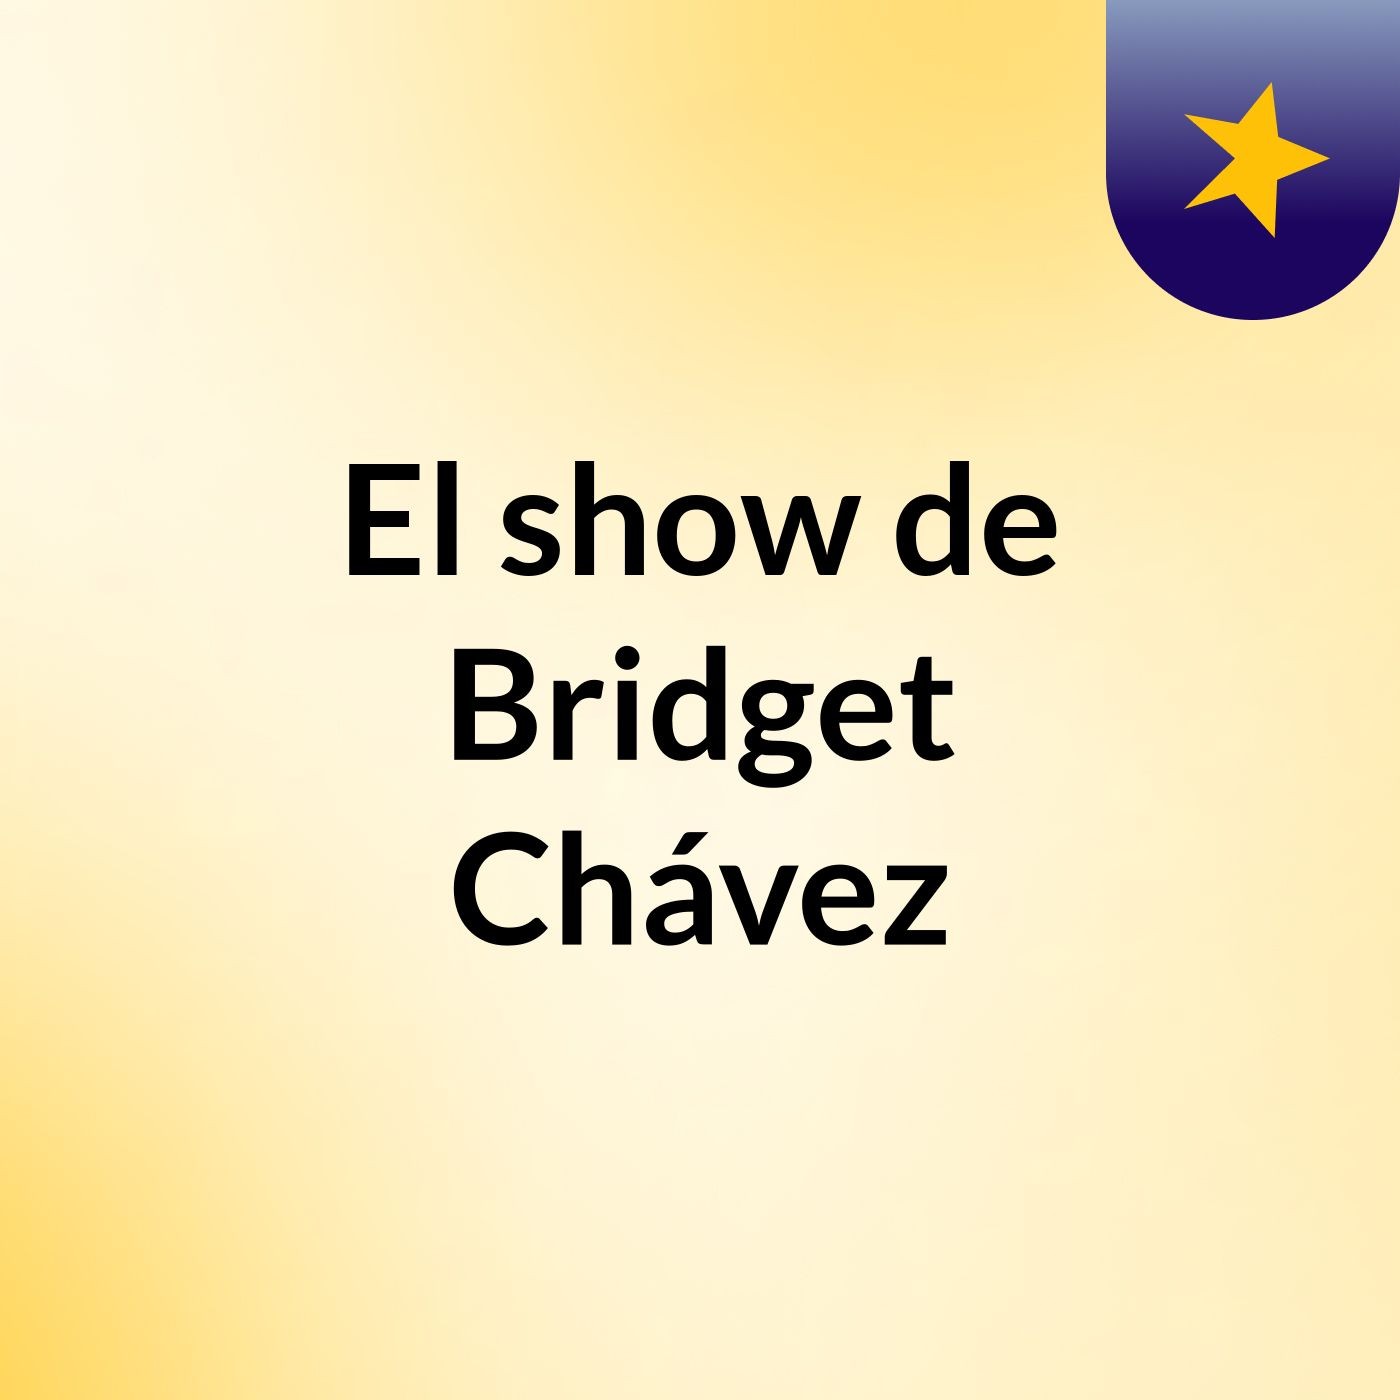 Episodio 5 - El show de Bridget Chávez